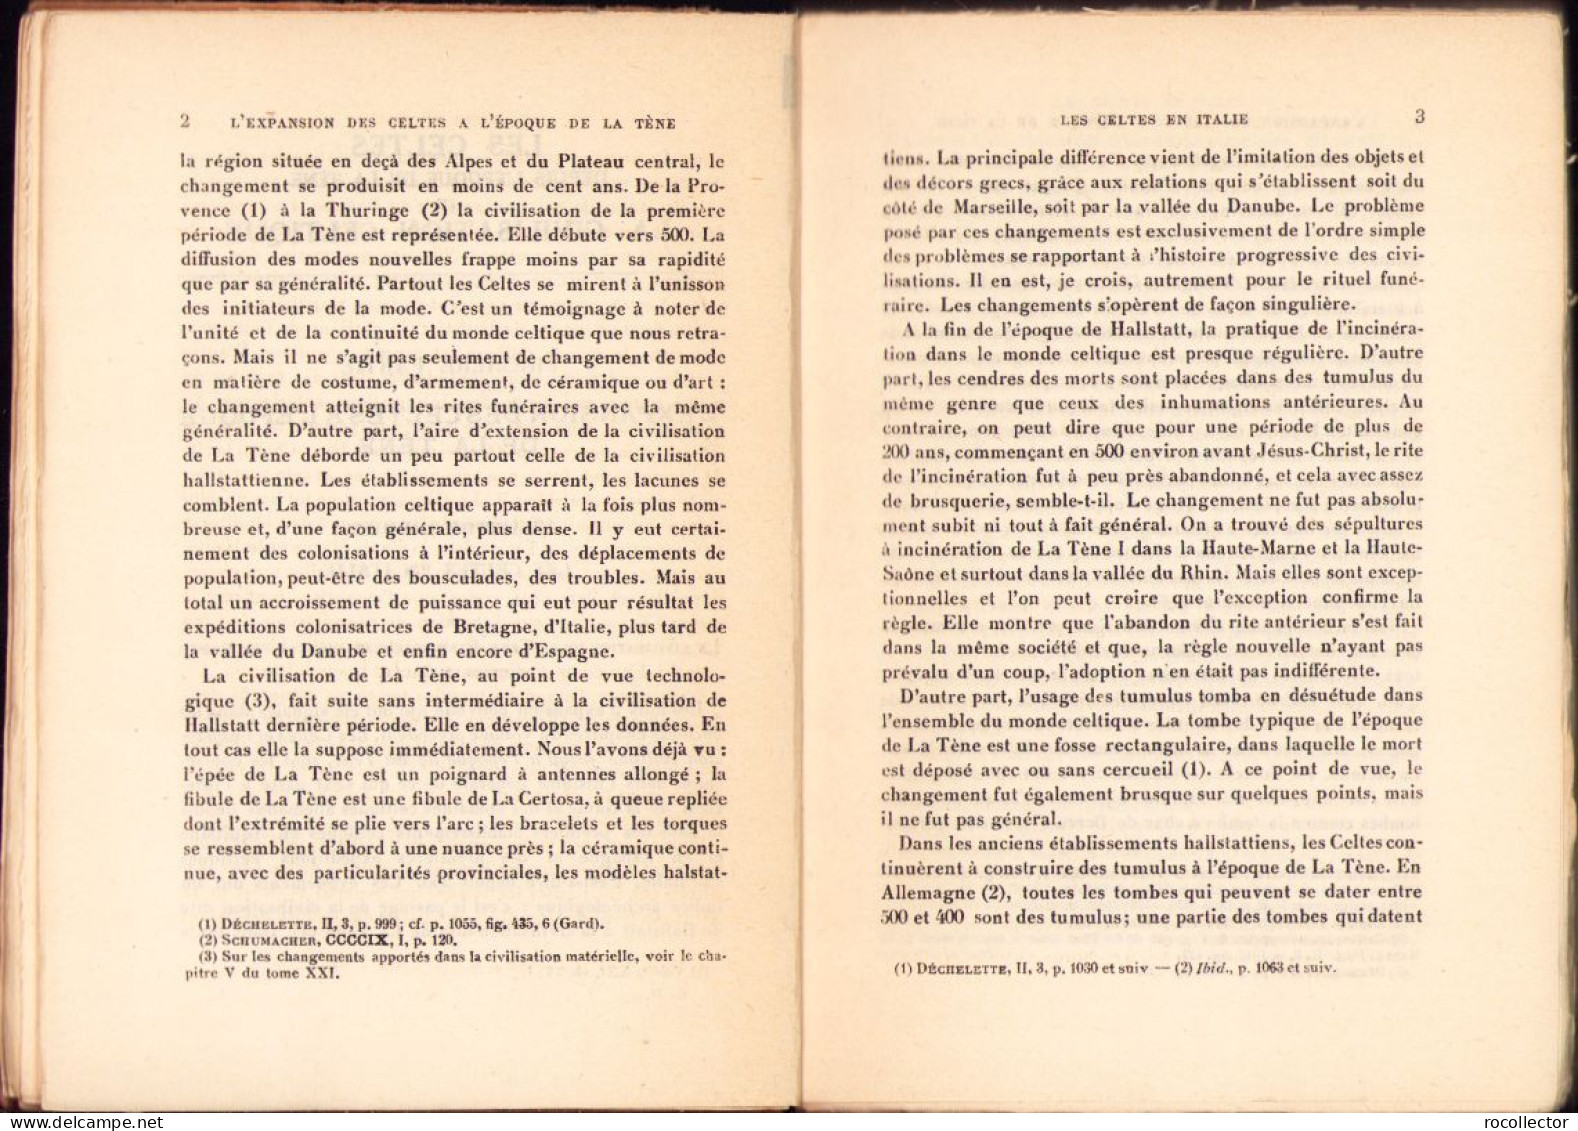 Les Celtes Depuis L’epoque De La Tene Et La Civilisation Celtique Par Henri Hubert, 1932 642SP - Livres Anciens